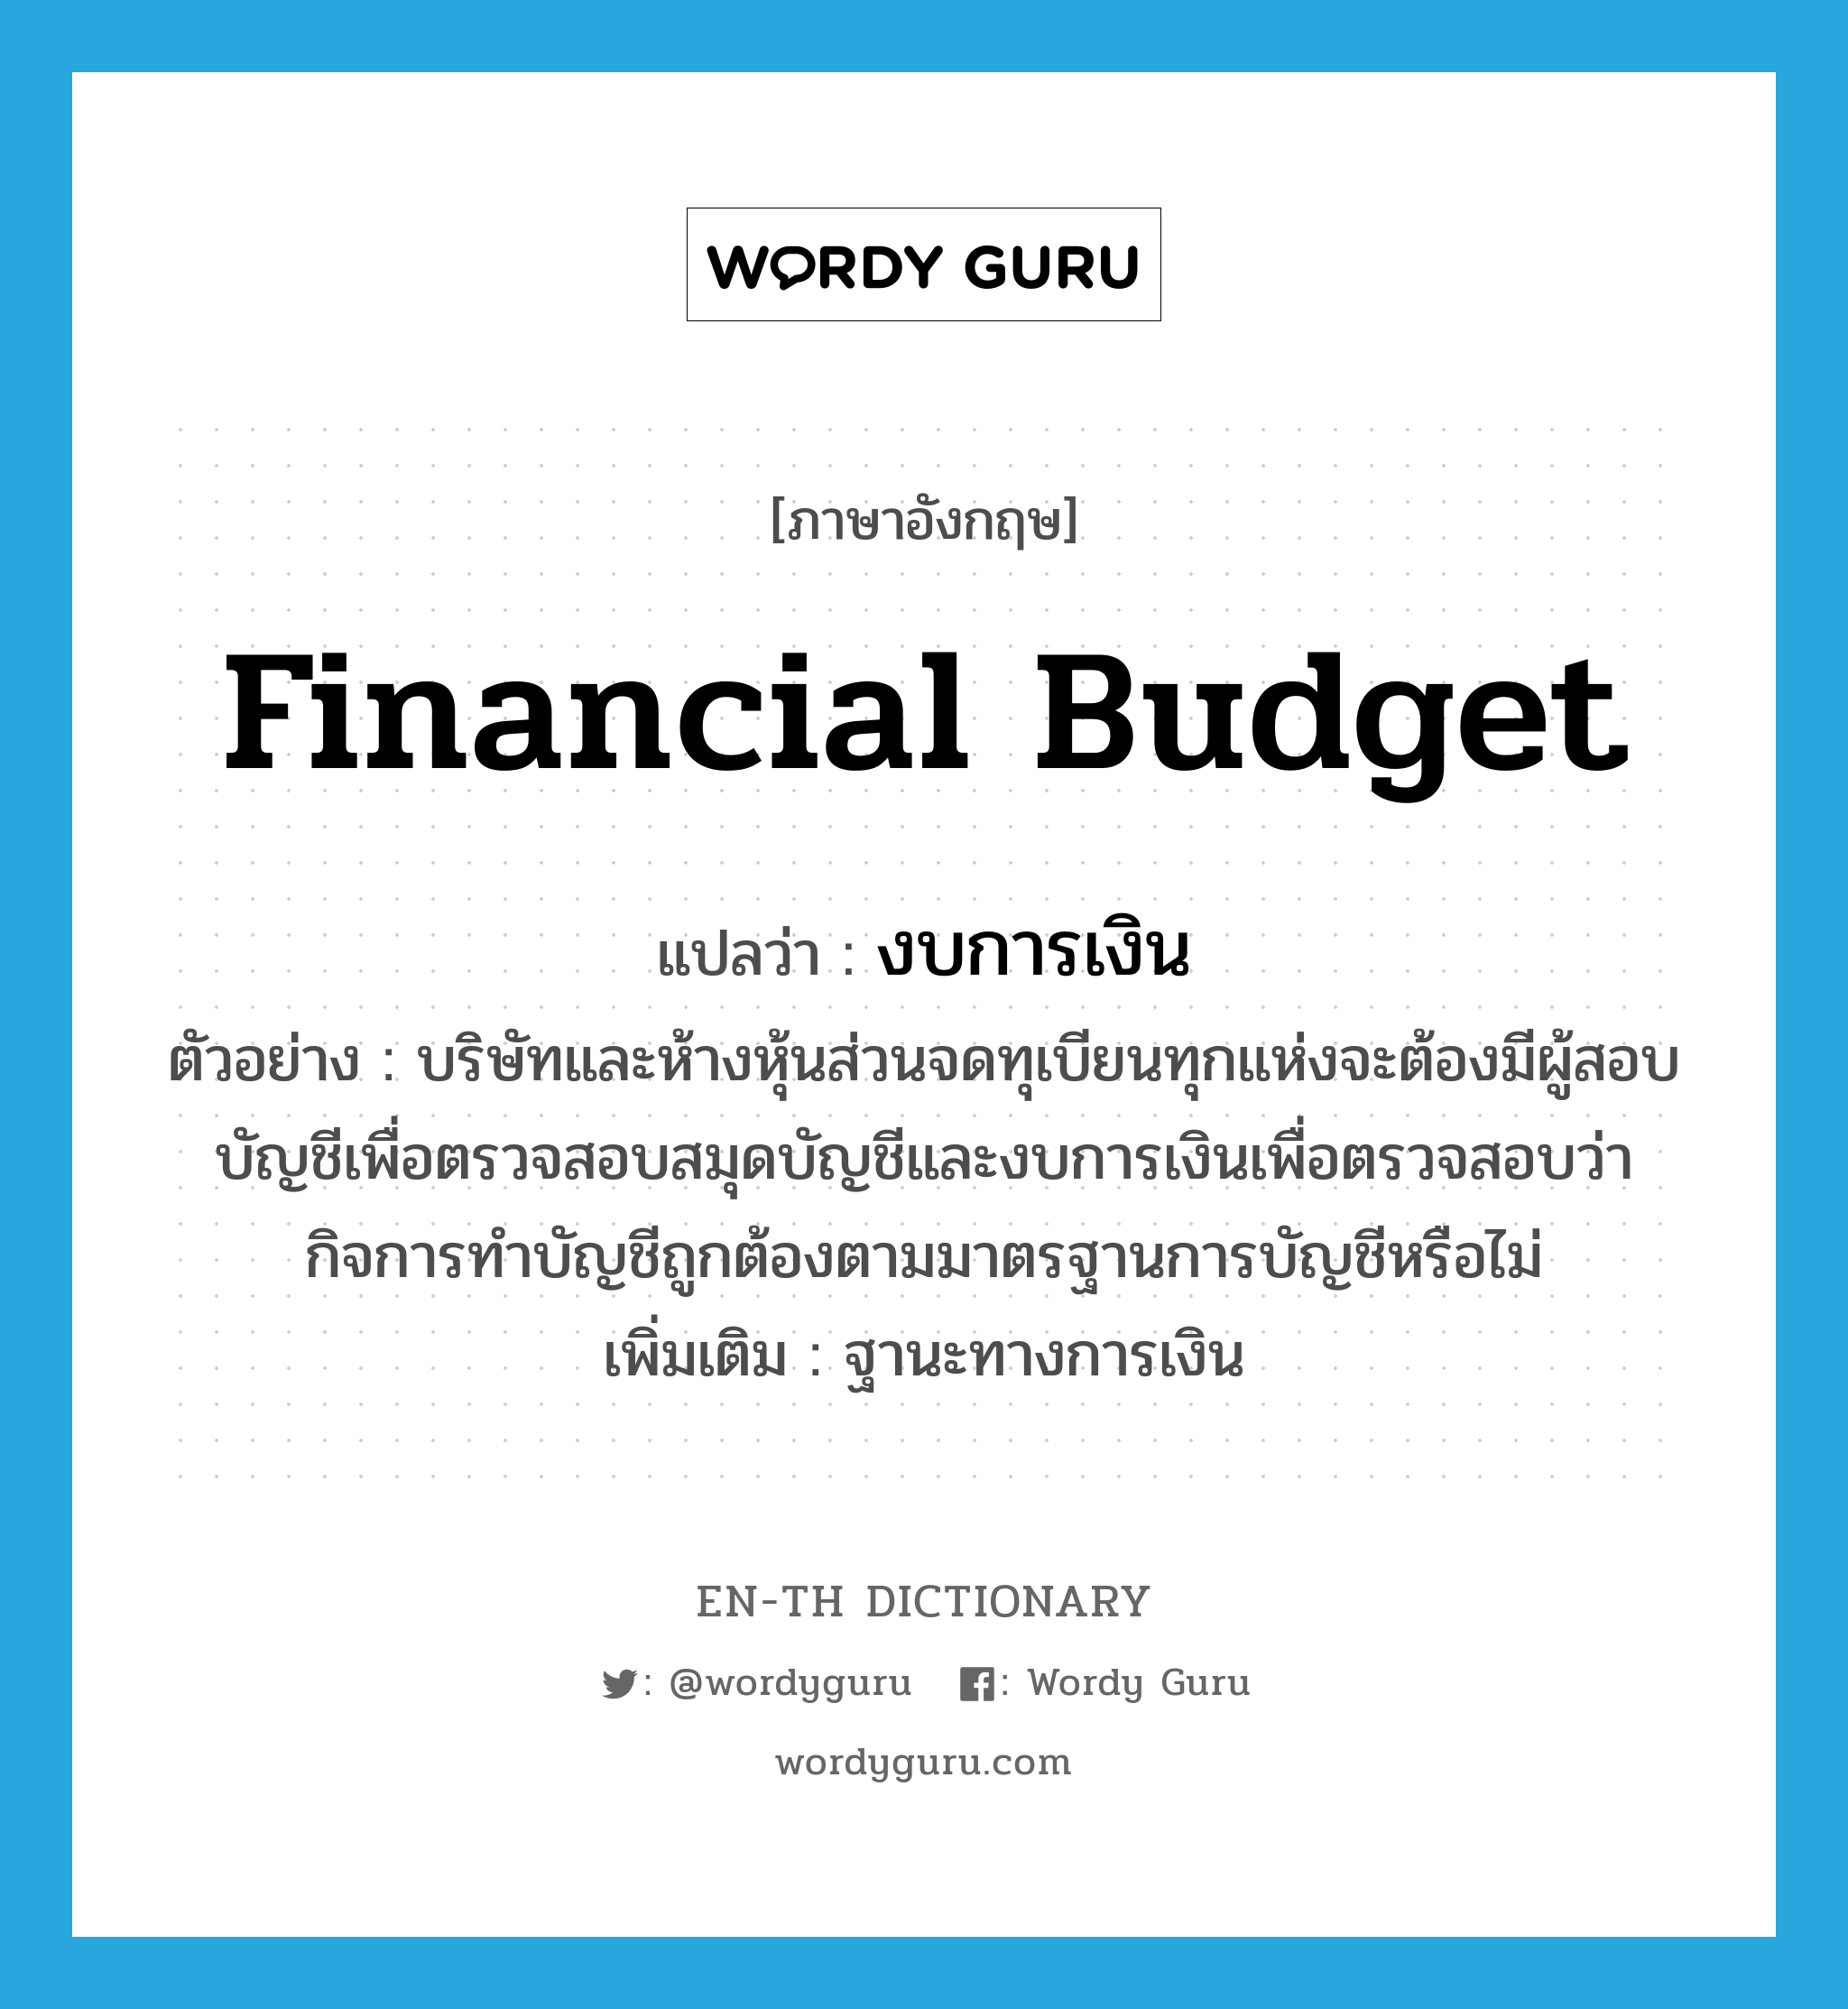 financial budget แปลว่า?, คำศัพท์ภาษาอังกฤษ financial budget แปลว่า งบการเงิน ประเภท N ตัวอย่าง บริษัทและห้างหุ้นส่วนจดทุเบียนทุกแห่งจะต้องมีผู้สอบบัญชีเพื่อตรวจสอบสมุดบัญชีและงบการเงินเพื่อตรวจสอบว่ากิจการทำบัญชีถูกต้องตามมาตรฐานการบัญชีหรือไม่ เพิ่มเติม ฐานะทางการเงิน หมวด N